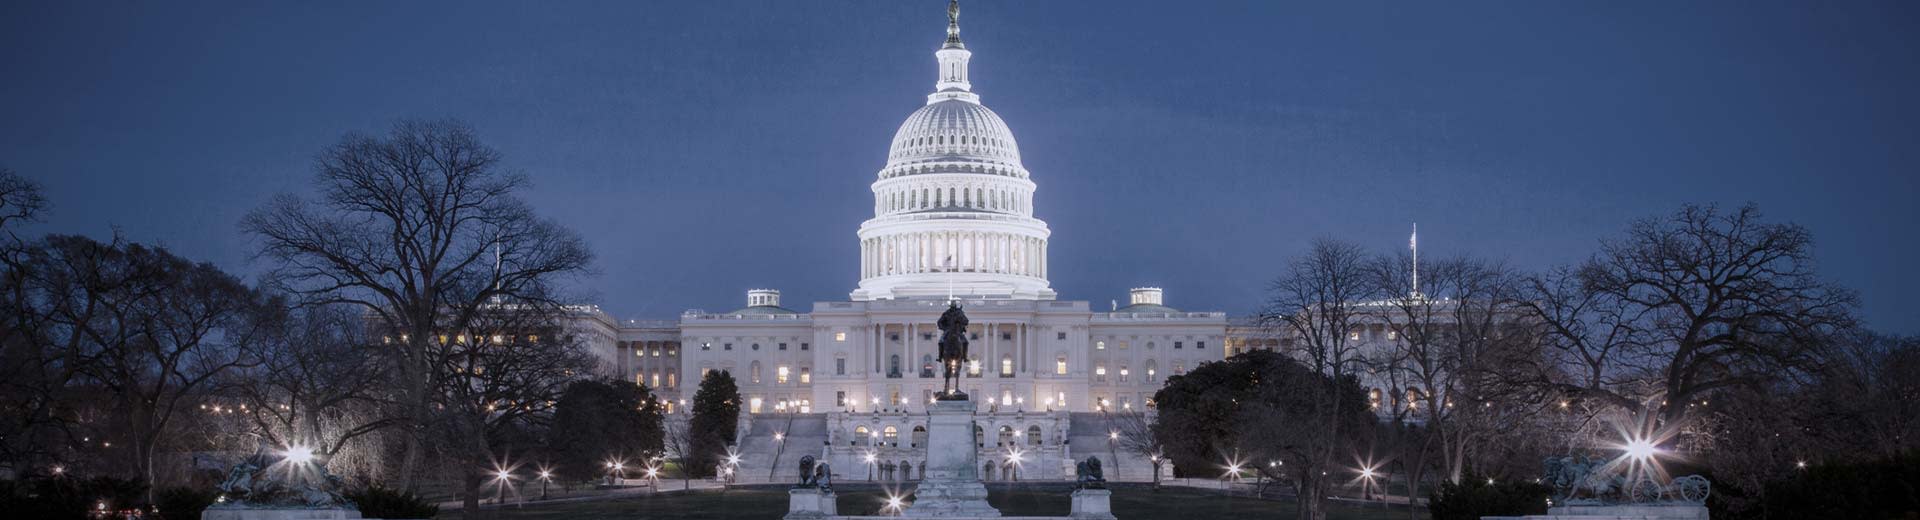 Un cielo azul marino enmarca uno de los puntos de referencia más famosos de Washington D.C: el edificio del Capitolio brilla en la oscuridad.